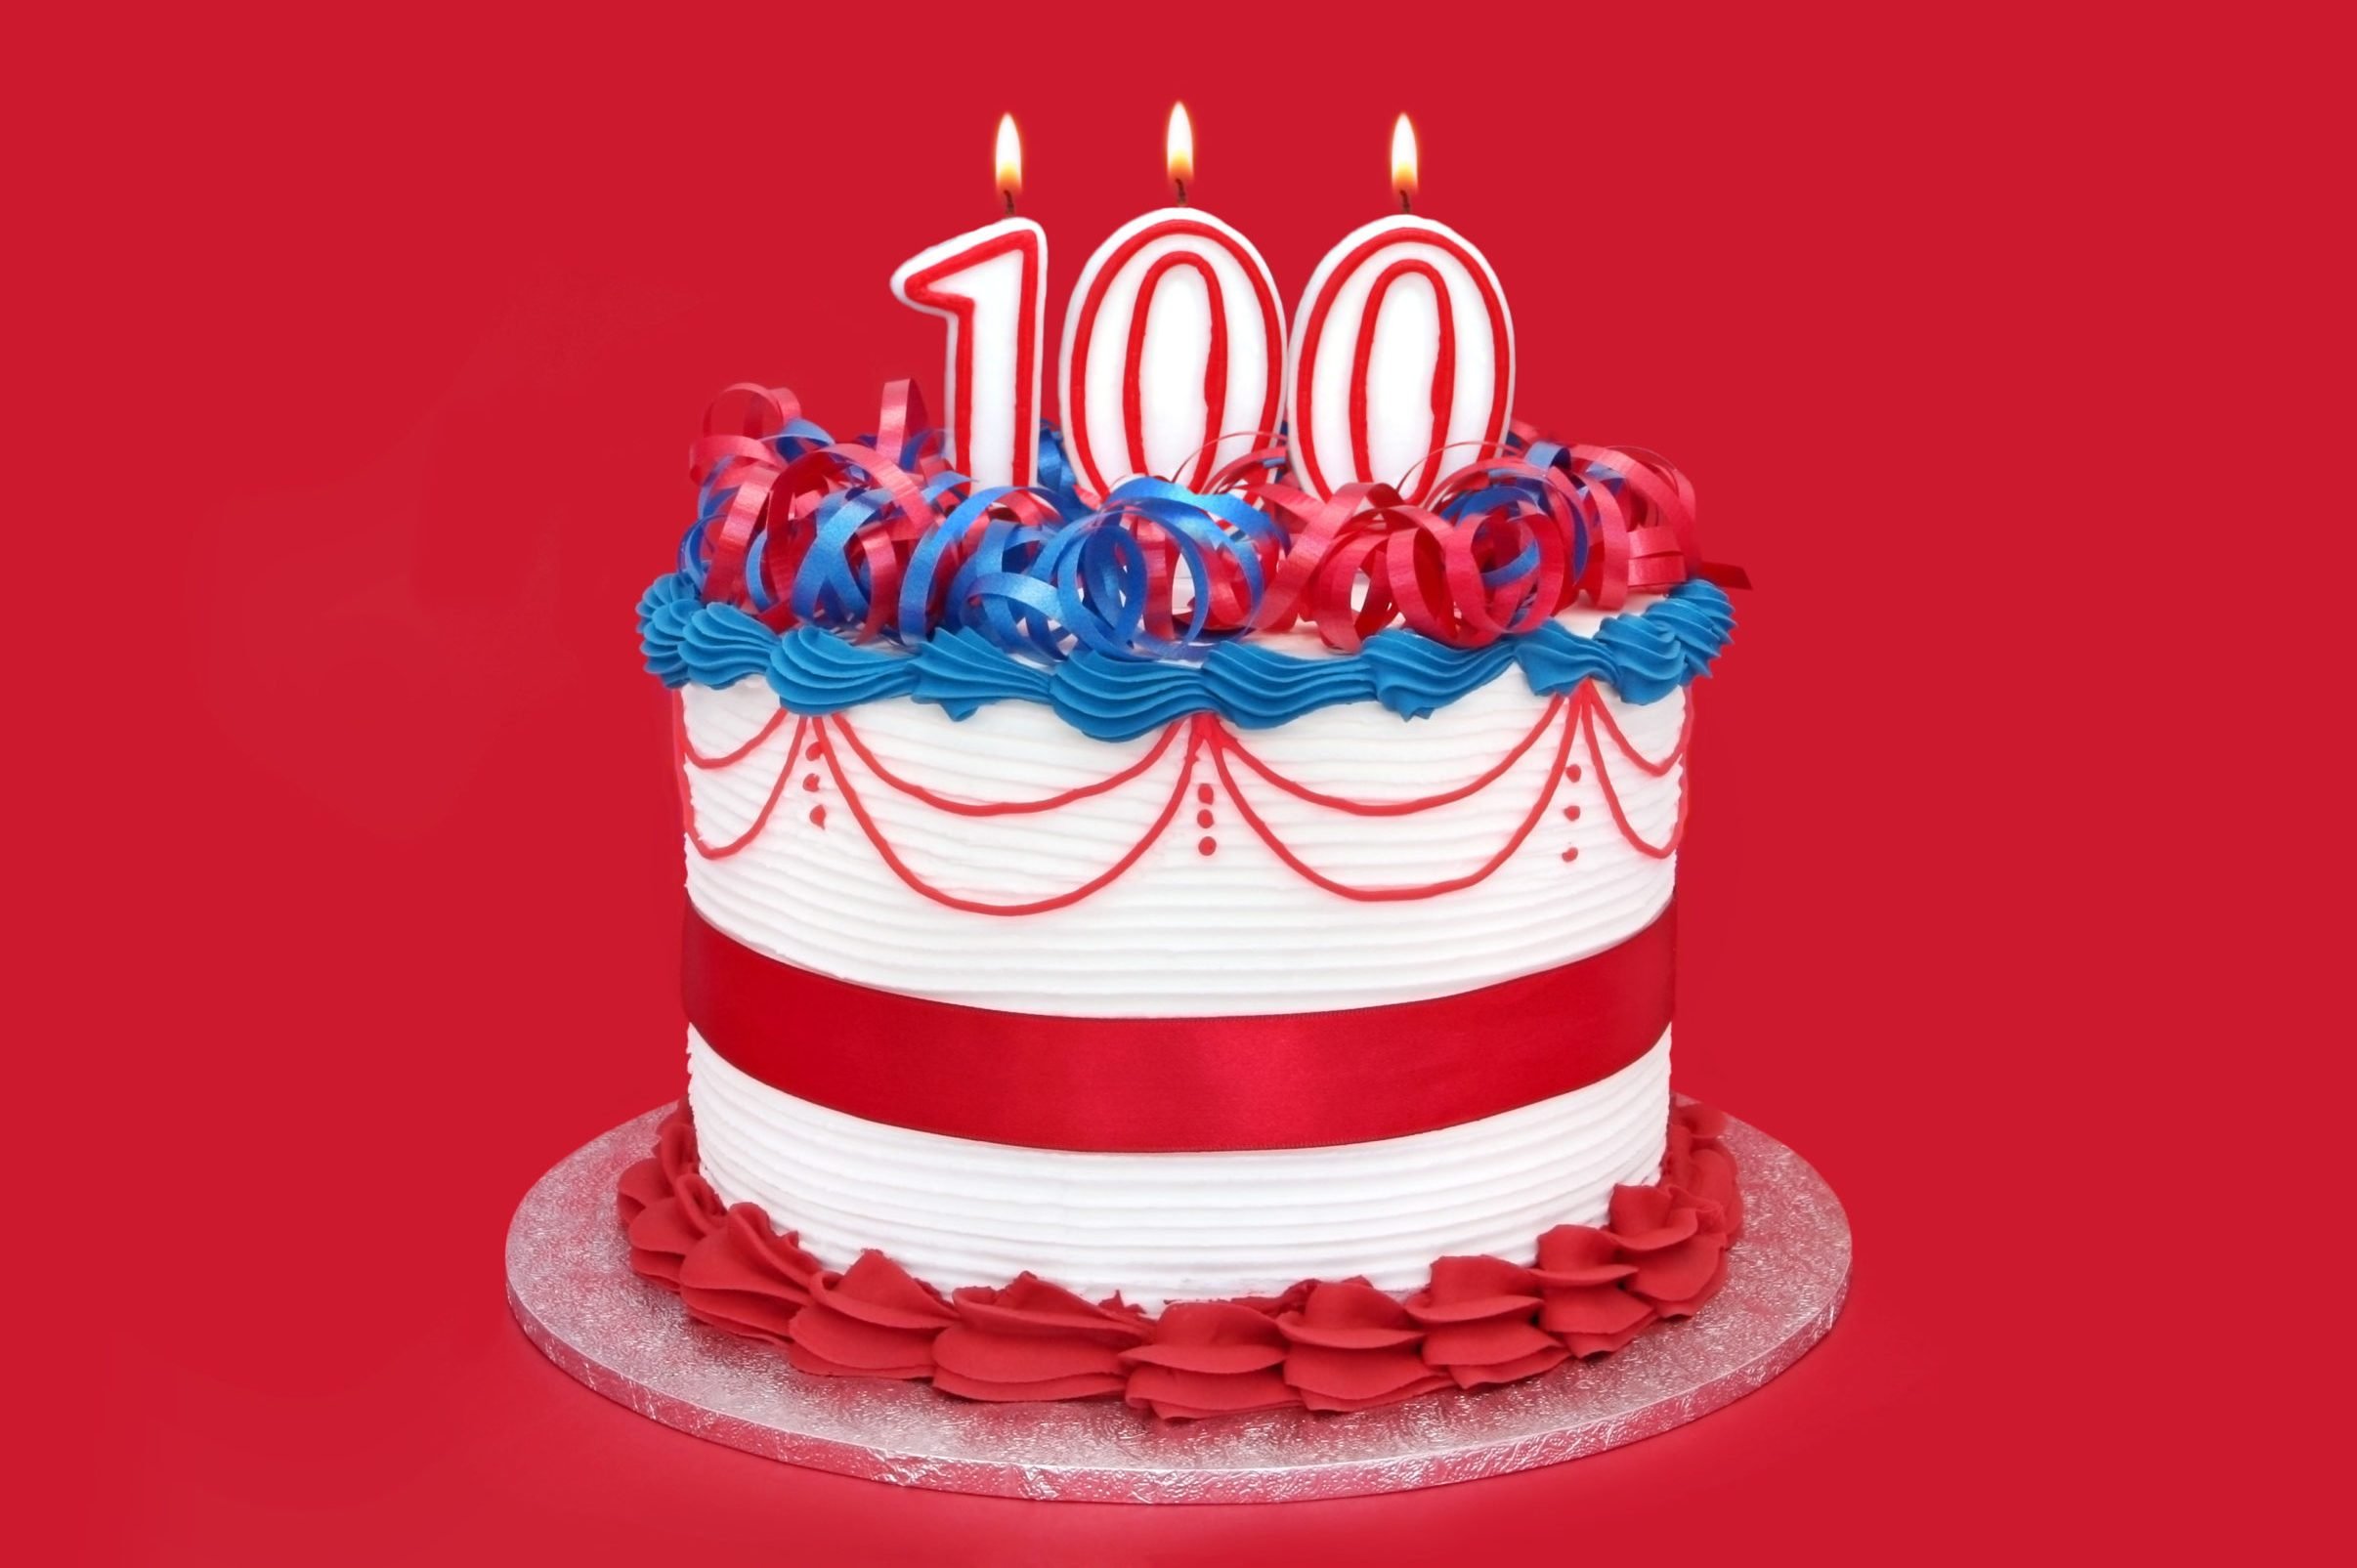 100th Anniversary of New York Rens